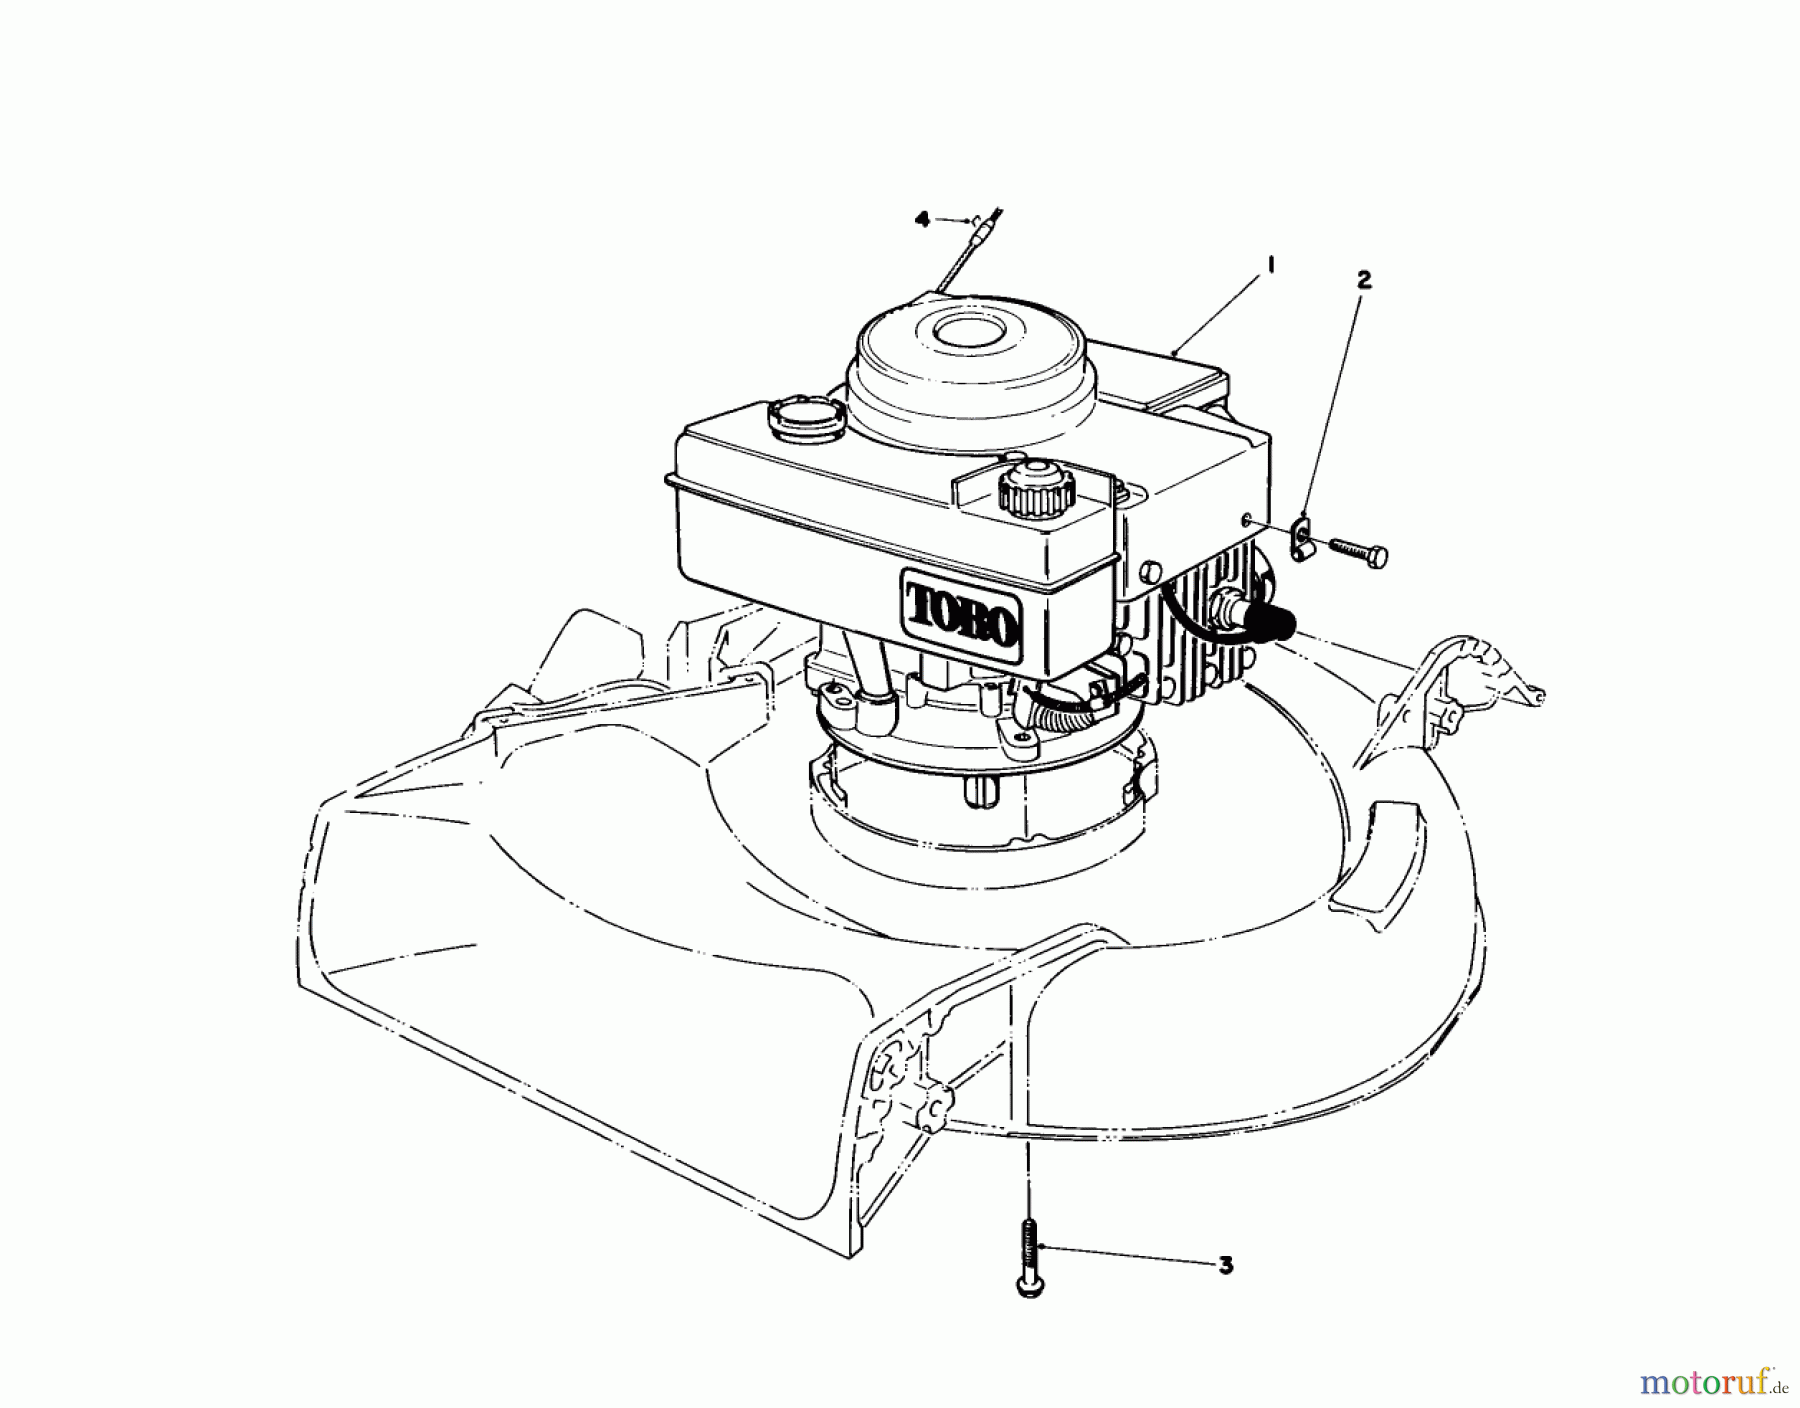  Toro Neu Mowers, Walk-Behind Seite 1 16575C - Toro Lawnmower, 1988 (8000001-8999999) ENGINE ASSEMBLY